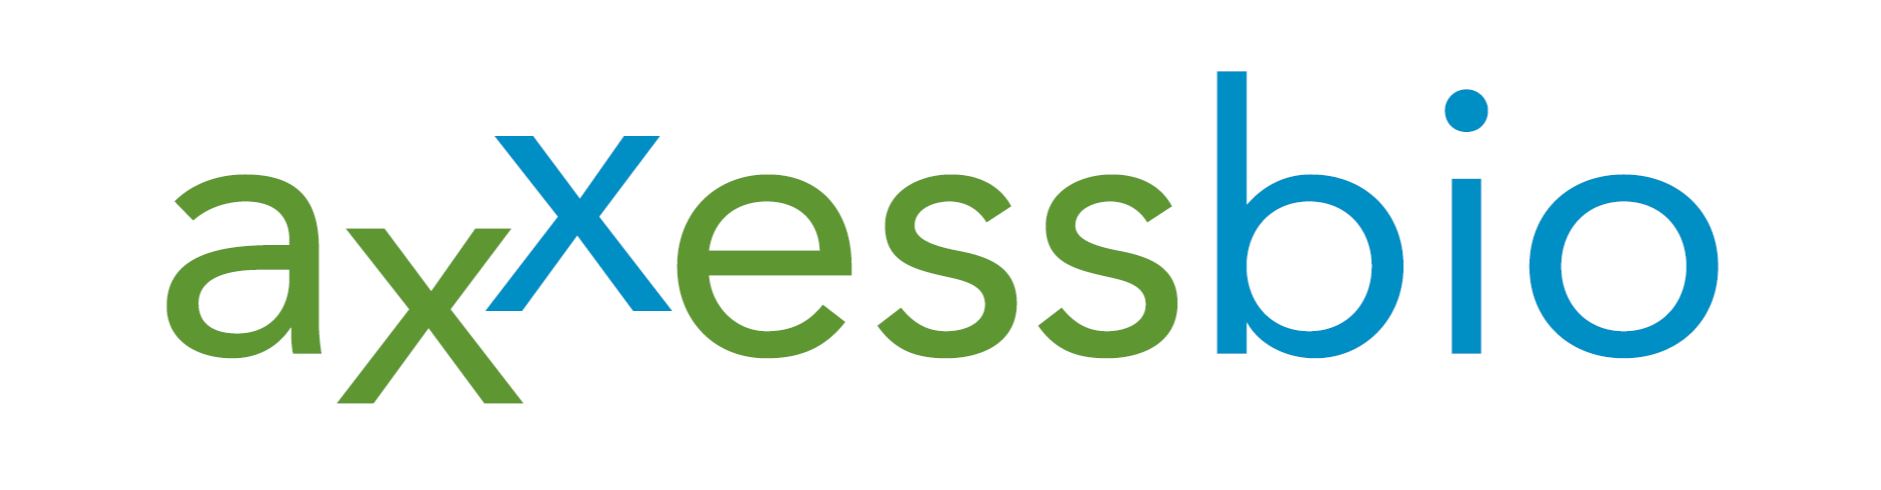 AxxessBio Logo